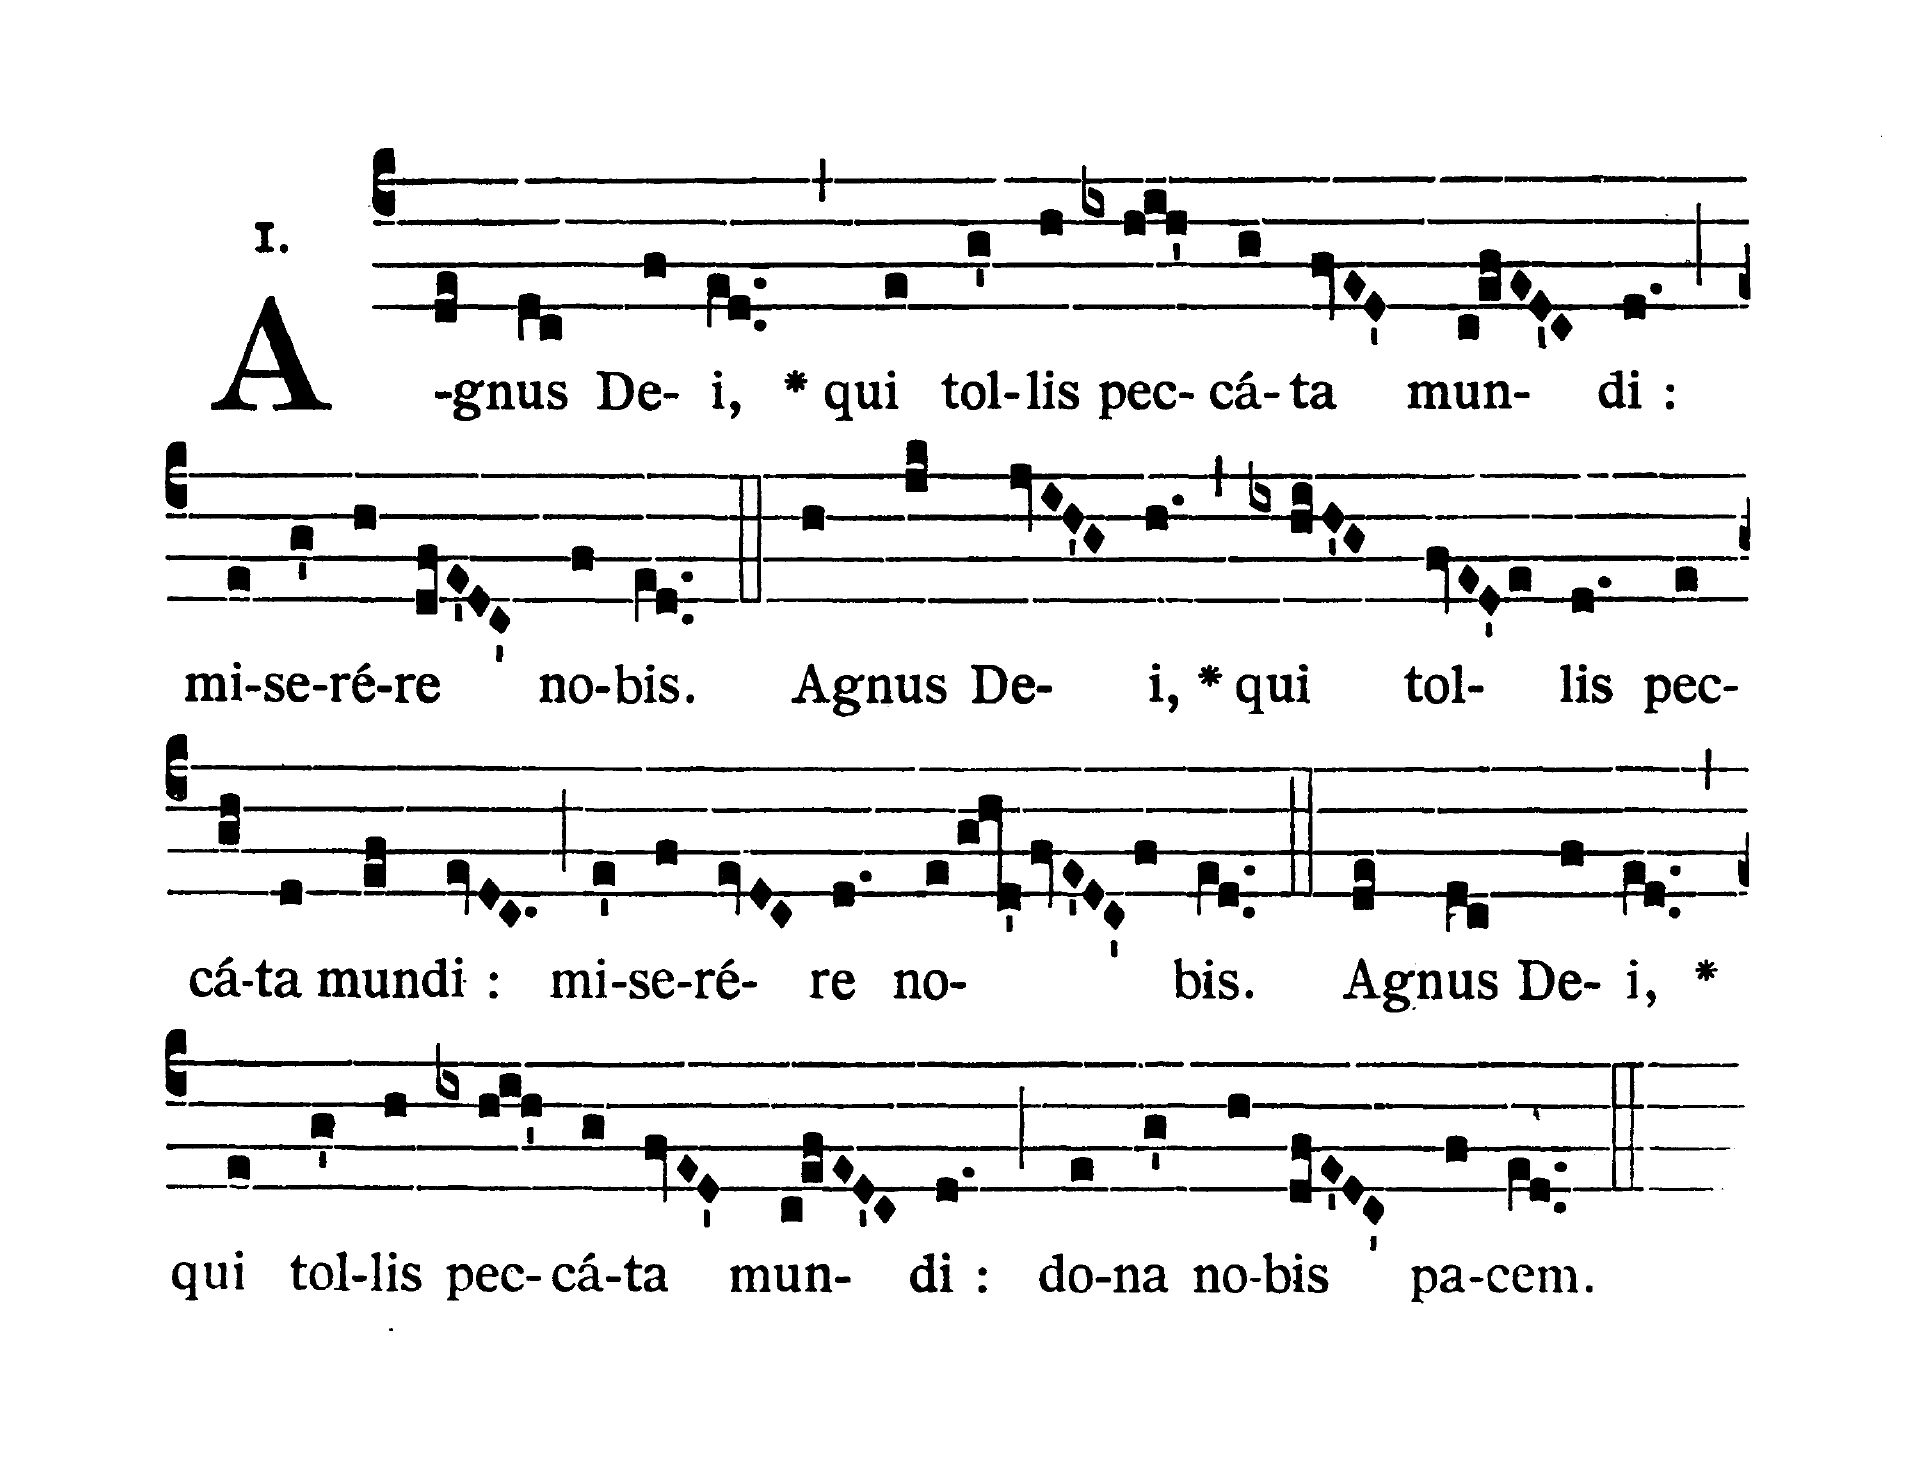 Missa XIII (Stelliferi Conditor orbis) - Agnus Dei